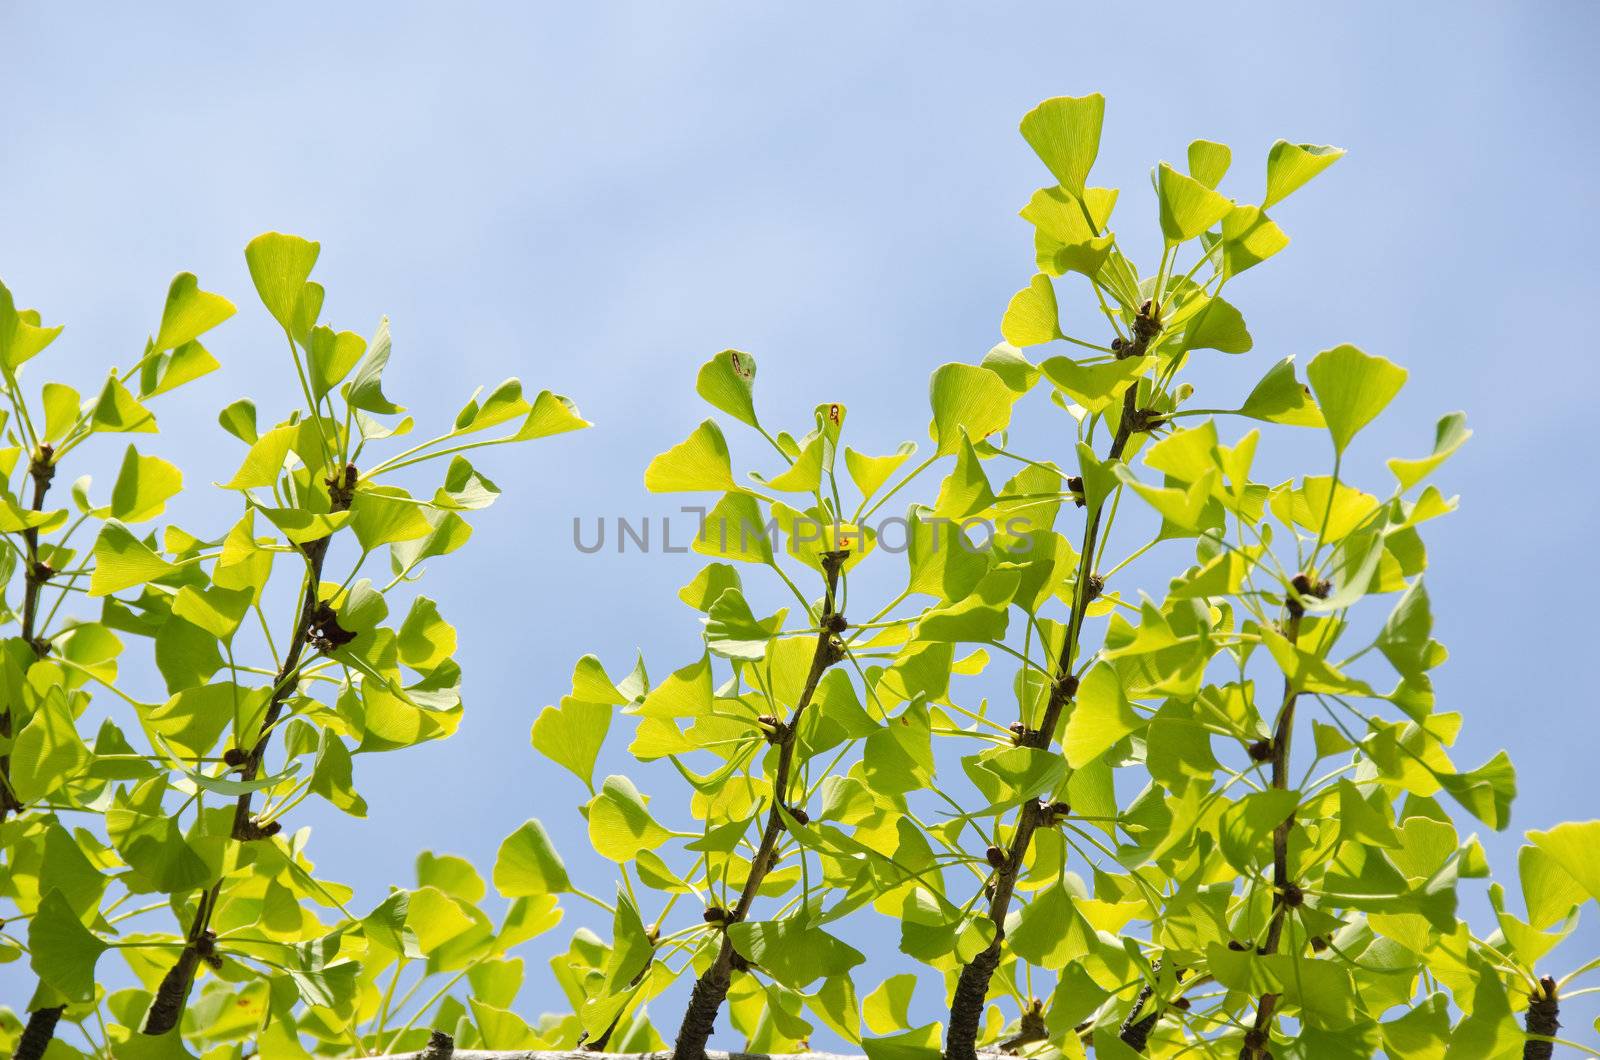 Leaves of the ginko tree, Ginkgo biloba, against blue sky in September